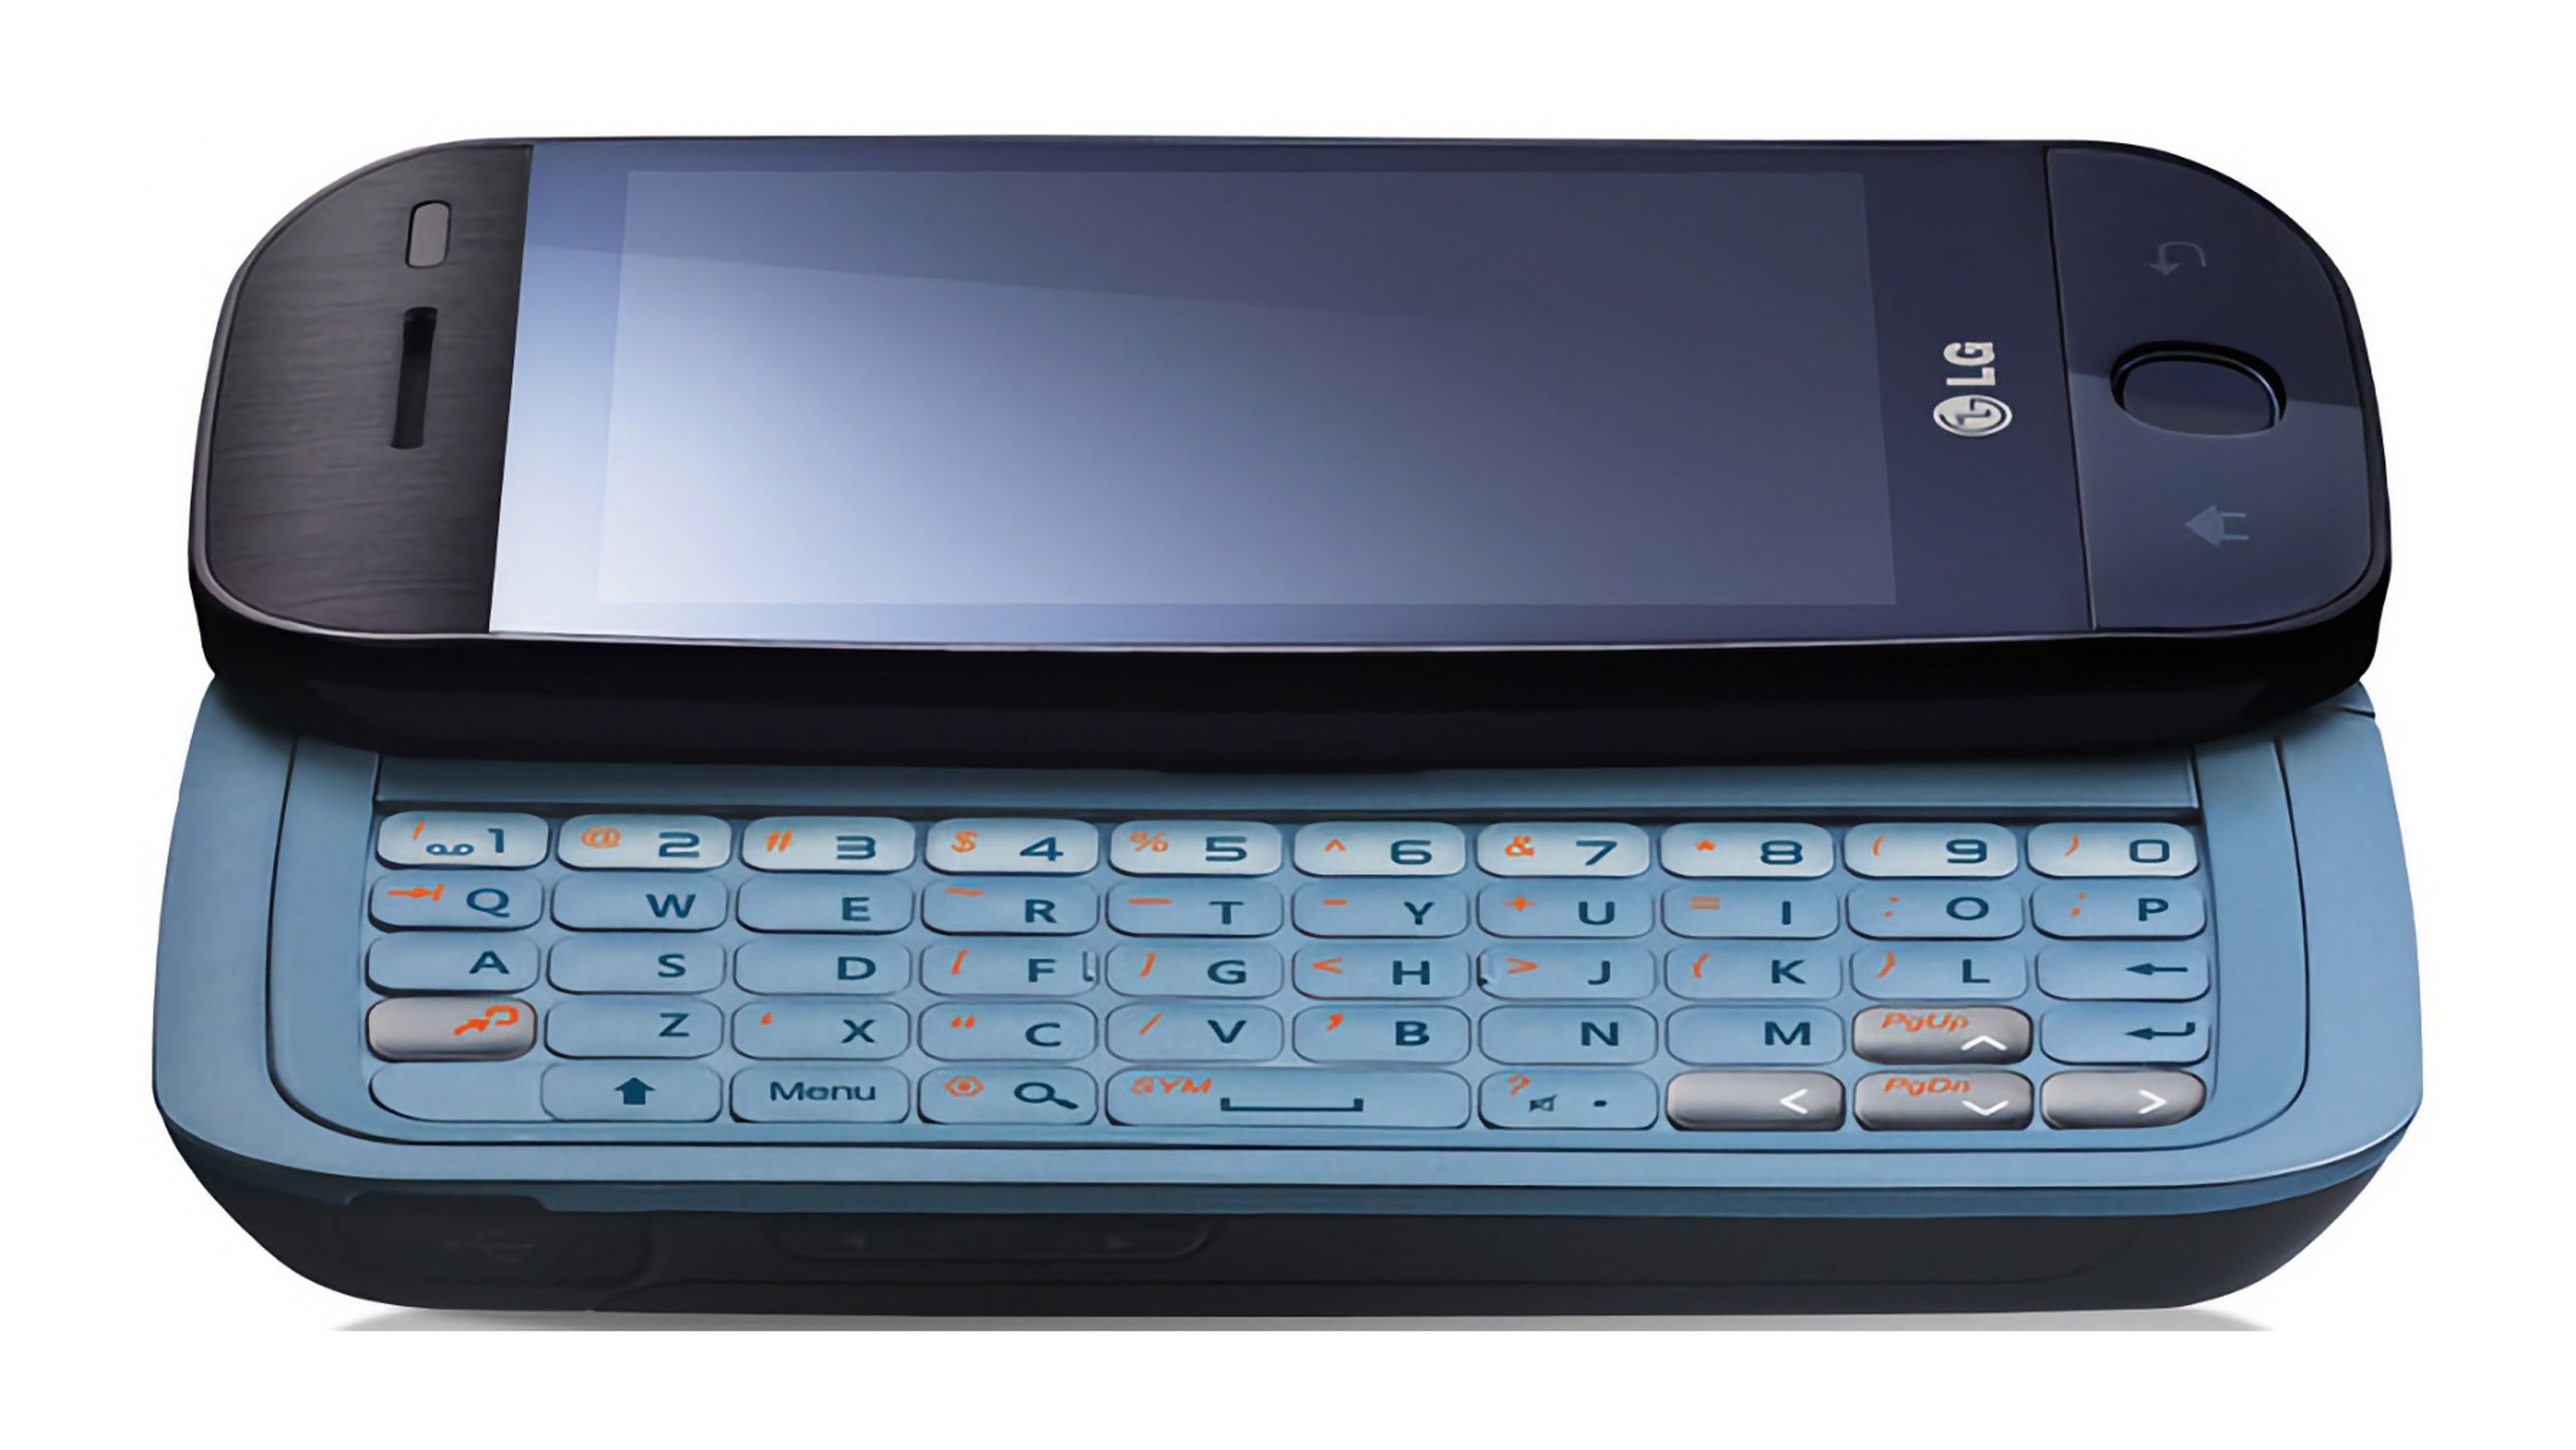 LG GW620, anunciado en noviembre de 2009 con Android 1.5